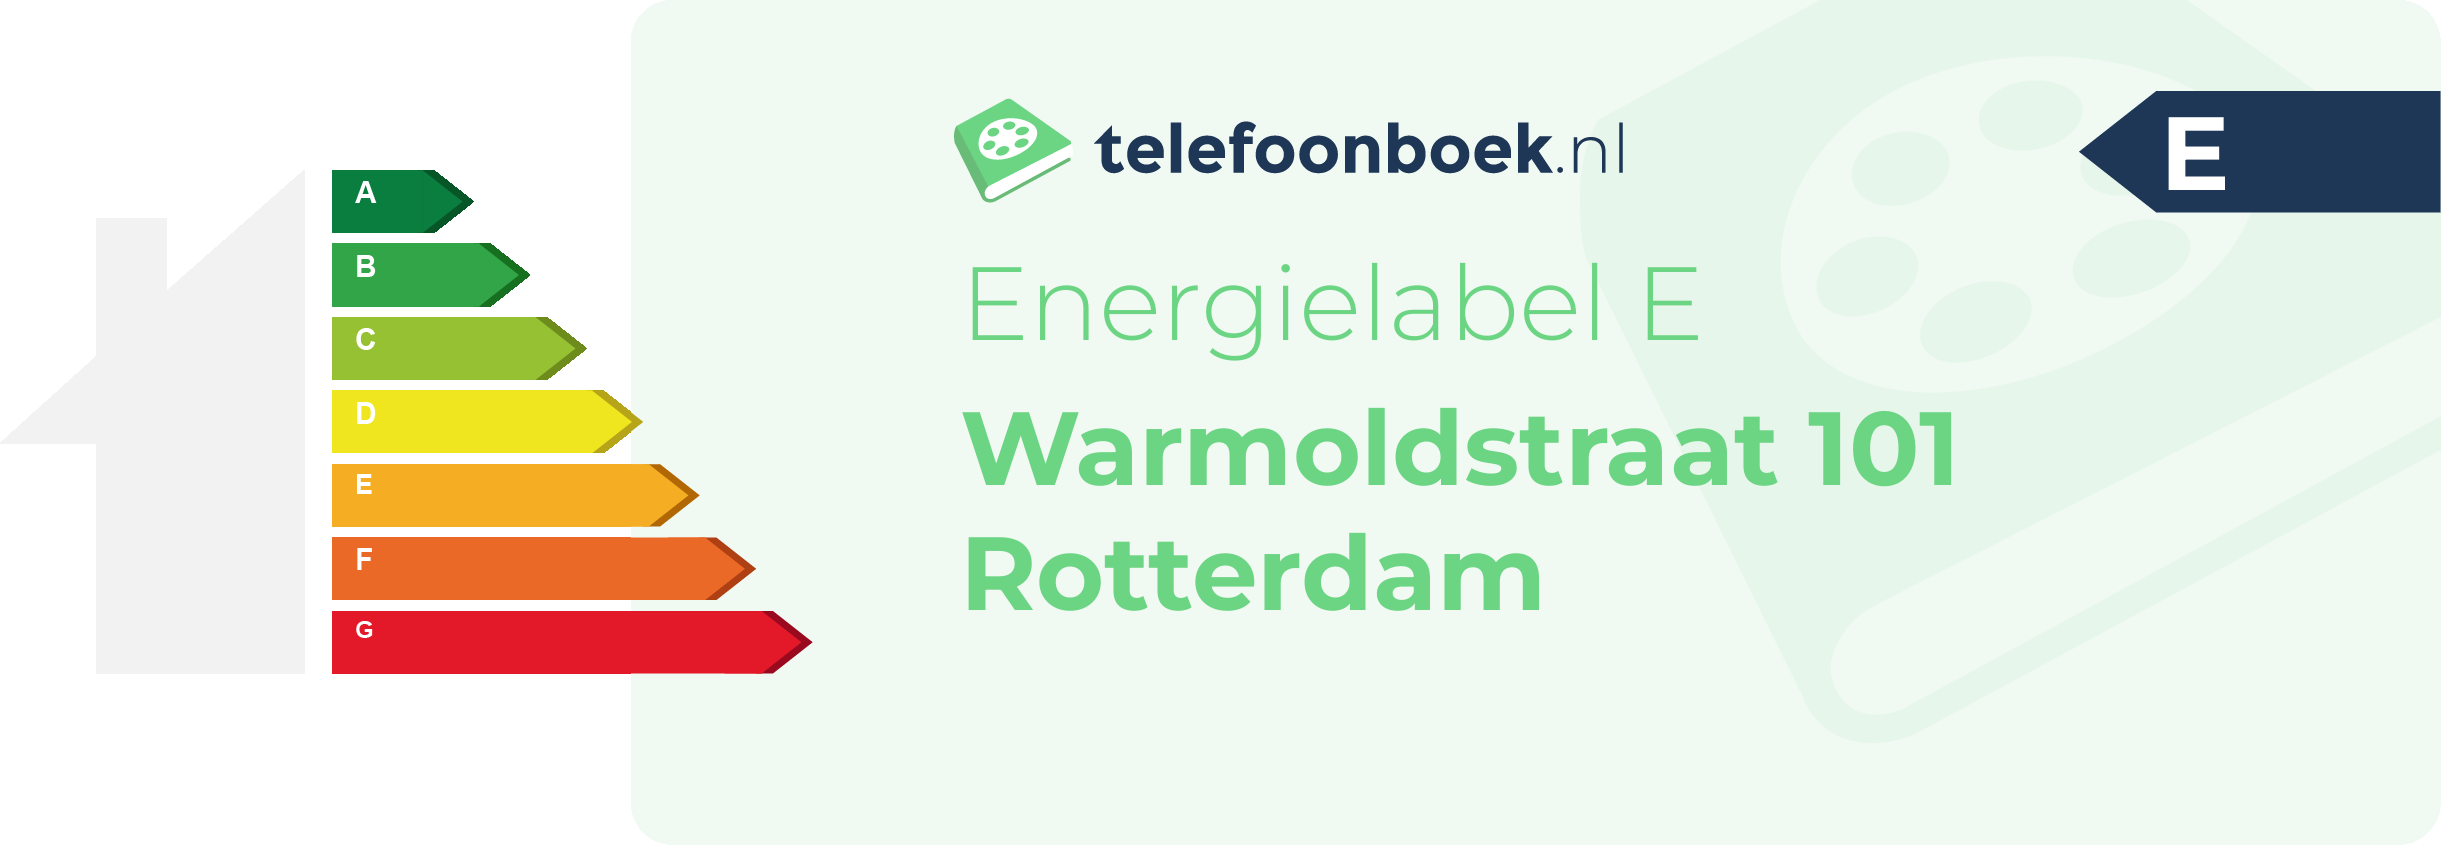 Energielabel Warmoldstraat 101 Rotterdam